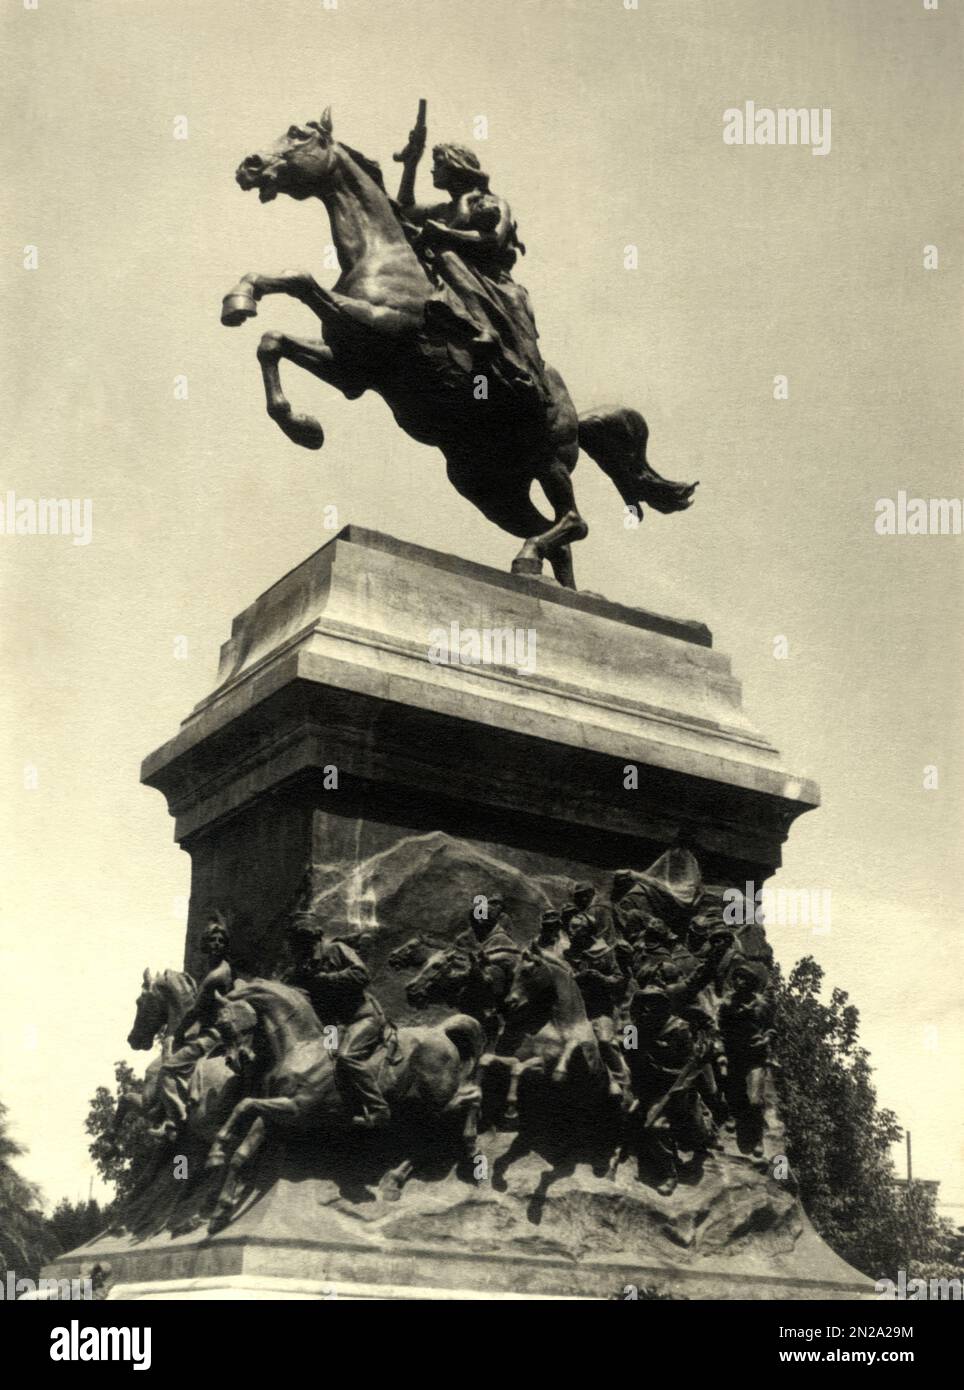 1932 c., ROME , ITALIE : la révolutionnaire brésilienne ANITA GARIBALDI ( 1821 - 1849 ), épouse du héros militaire italien GIUSEPPE GARIBALDI ( 1807 - 1882 ). Le célèbre monument en bronze sur la colline de Gianicolo par le sculpteur italien MARIO RUTELLI ( 1859 - 1941 ), édifié en 1932 . Photographe inconnu . ROMA - POLITICO - POLITICA - POLITIQUE - Unità d'Italia - RISORGIMENTO - ITALIA - FOTO STORICHE - HISTOIRE - statua - monumento equestre - SCUCULTURA - SCULPTURE - Ana Maria de Jesus RIBEIRO DA SILVA - ARTE - ARTS - statua - statue -- Archivio GBB Banque D'Images